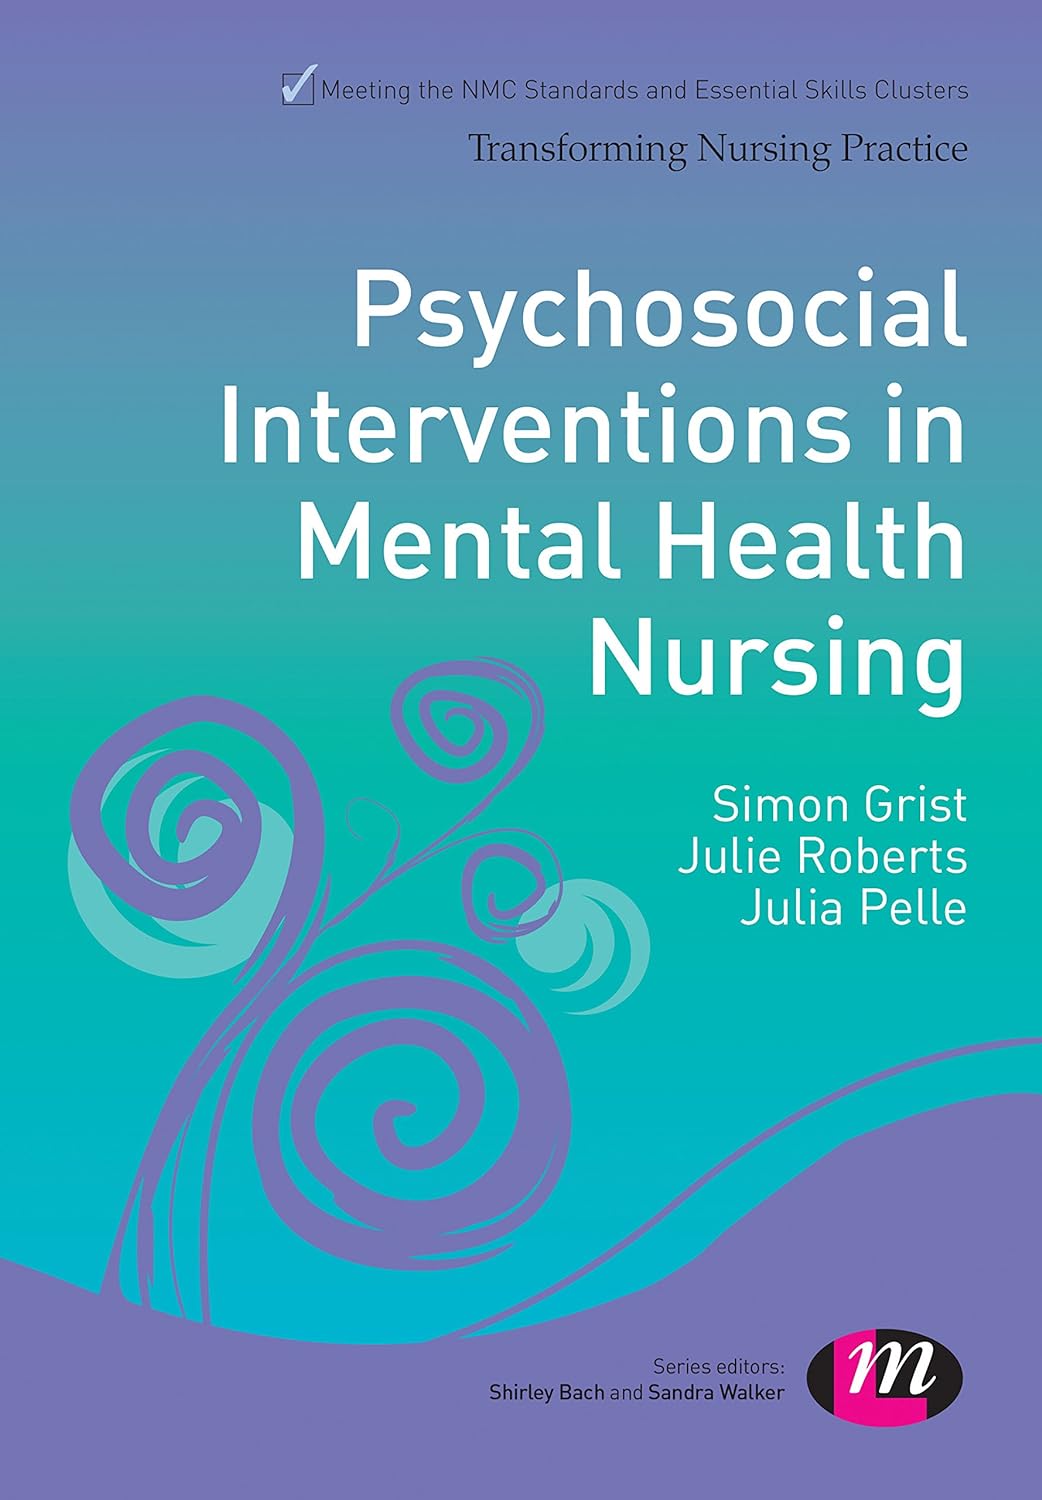 Psychosocial Interventions in Mental Health Nursing (Transforming Nursing Practice Series)  by  Sandra Walker 